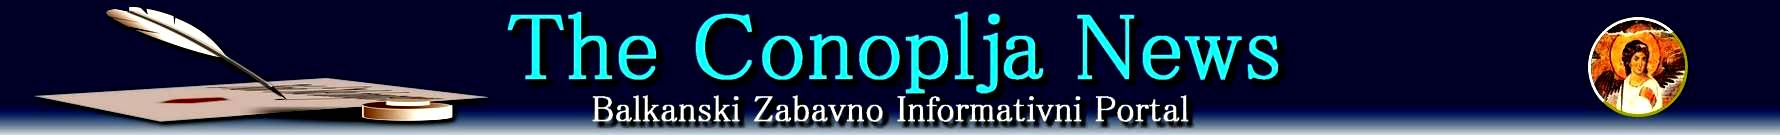 The Conoplja News - Balkanski Zabavno Informativni Portal